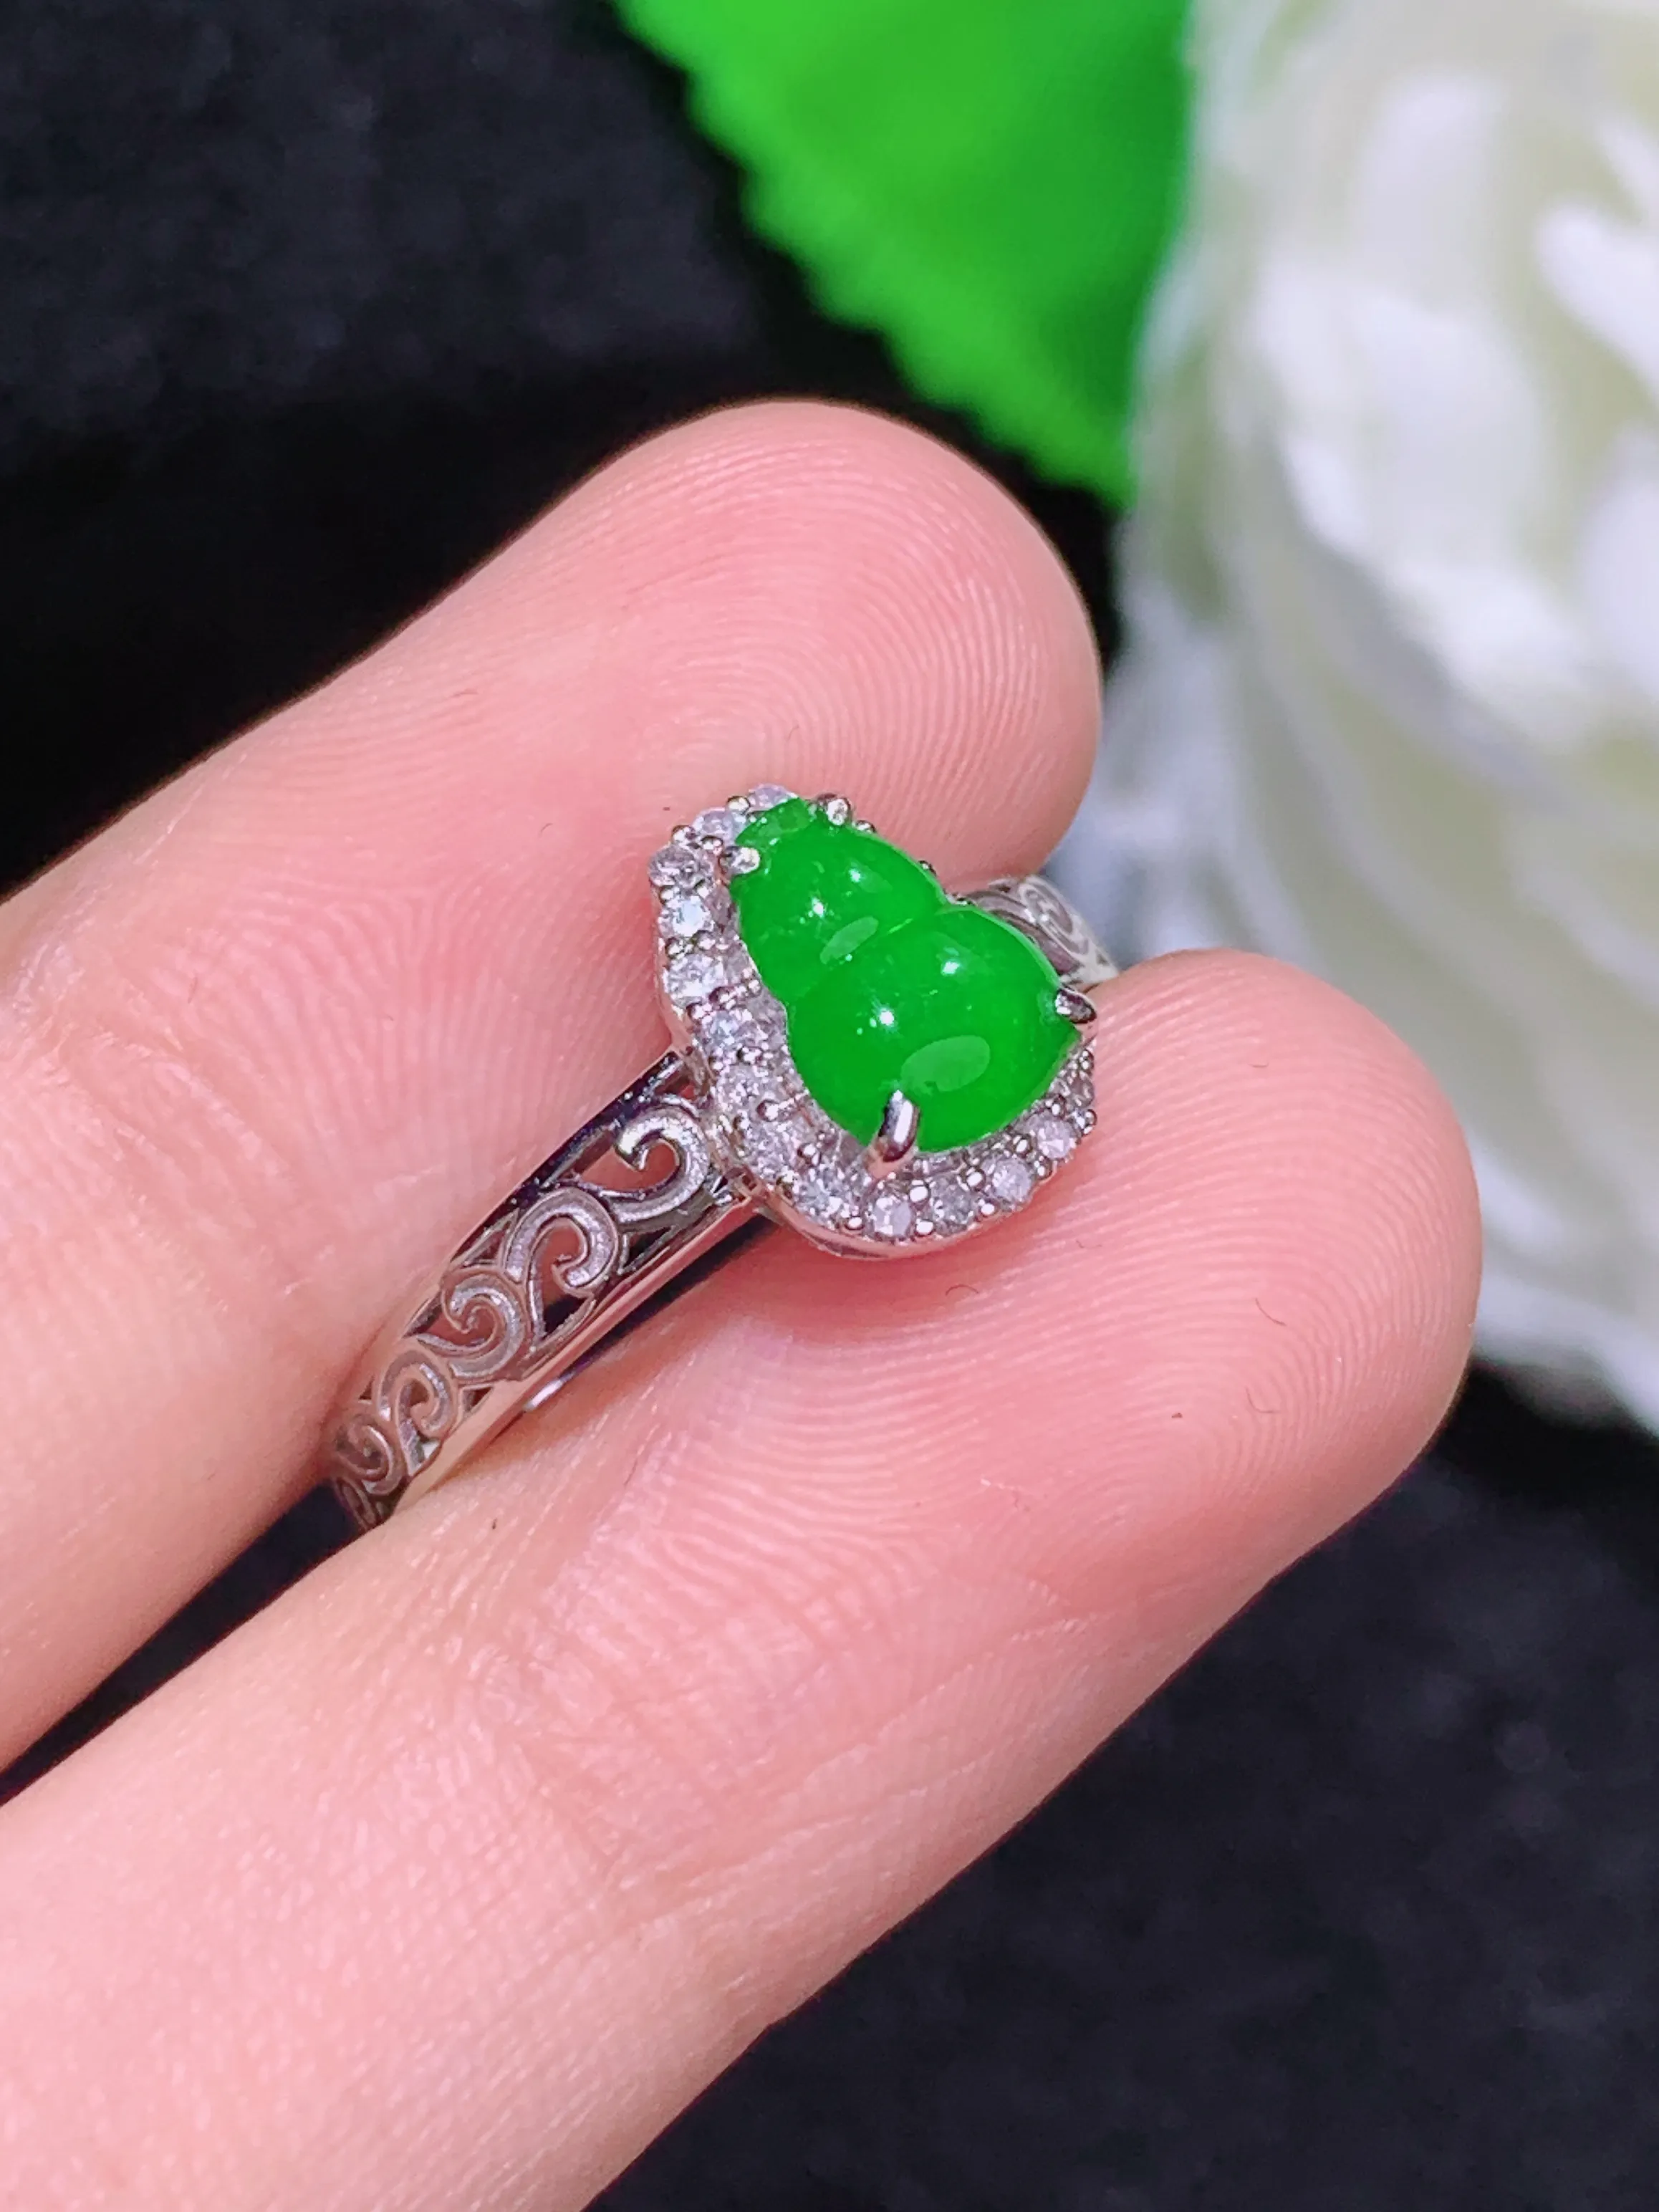 满绿葫芦戒指，18k金镶嵌，冰润细腻，佩戴效果出众，整体尺寸：9.8-7.8